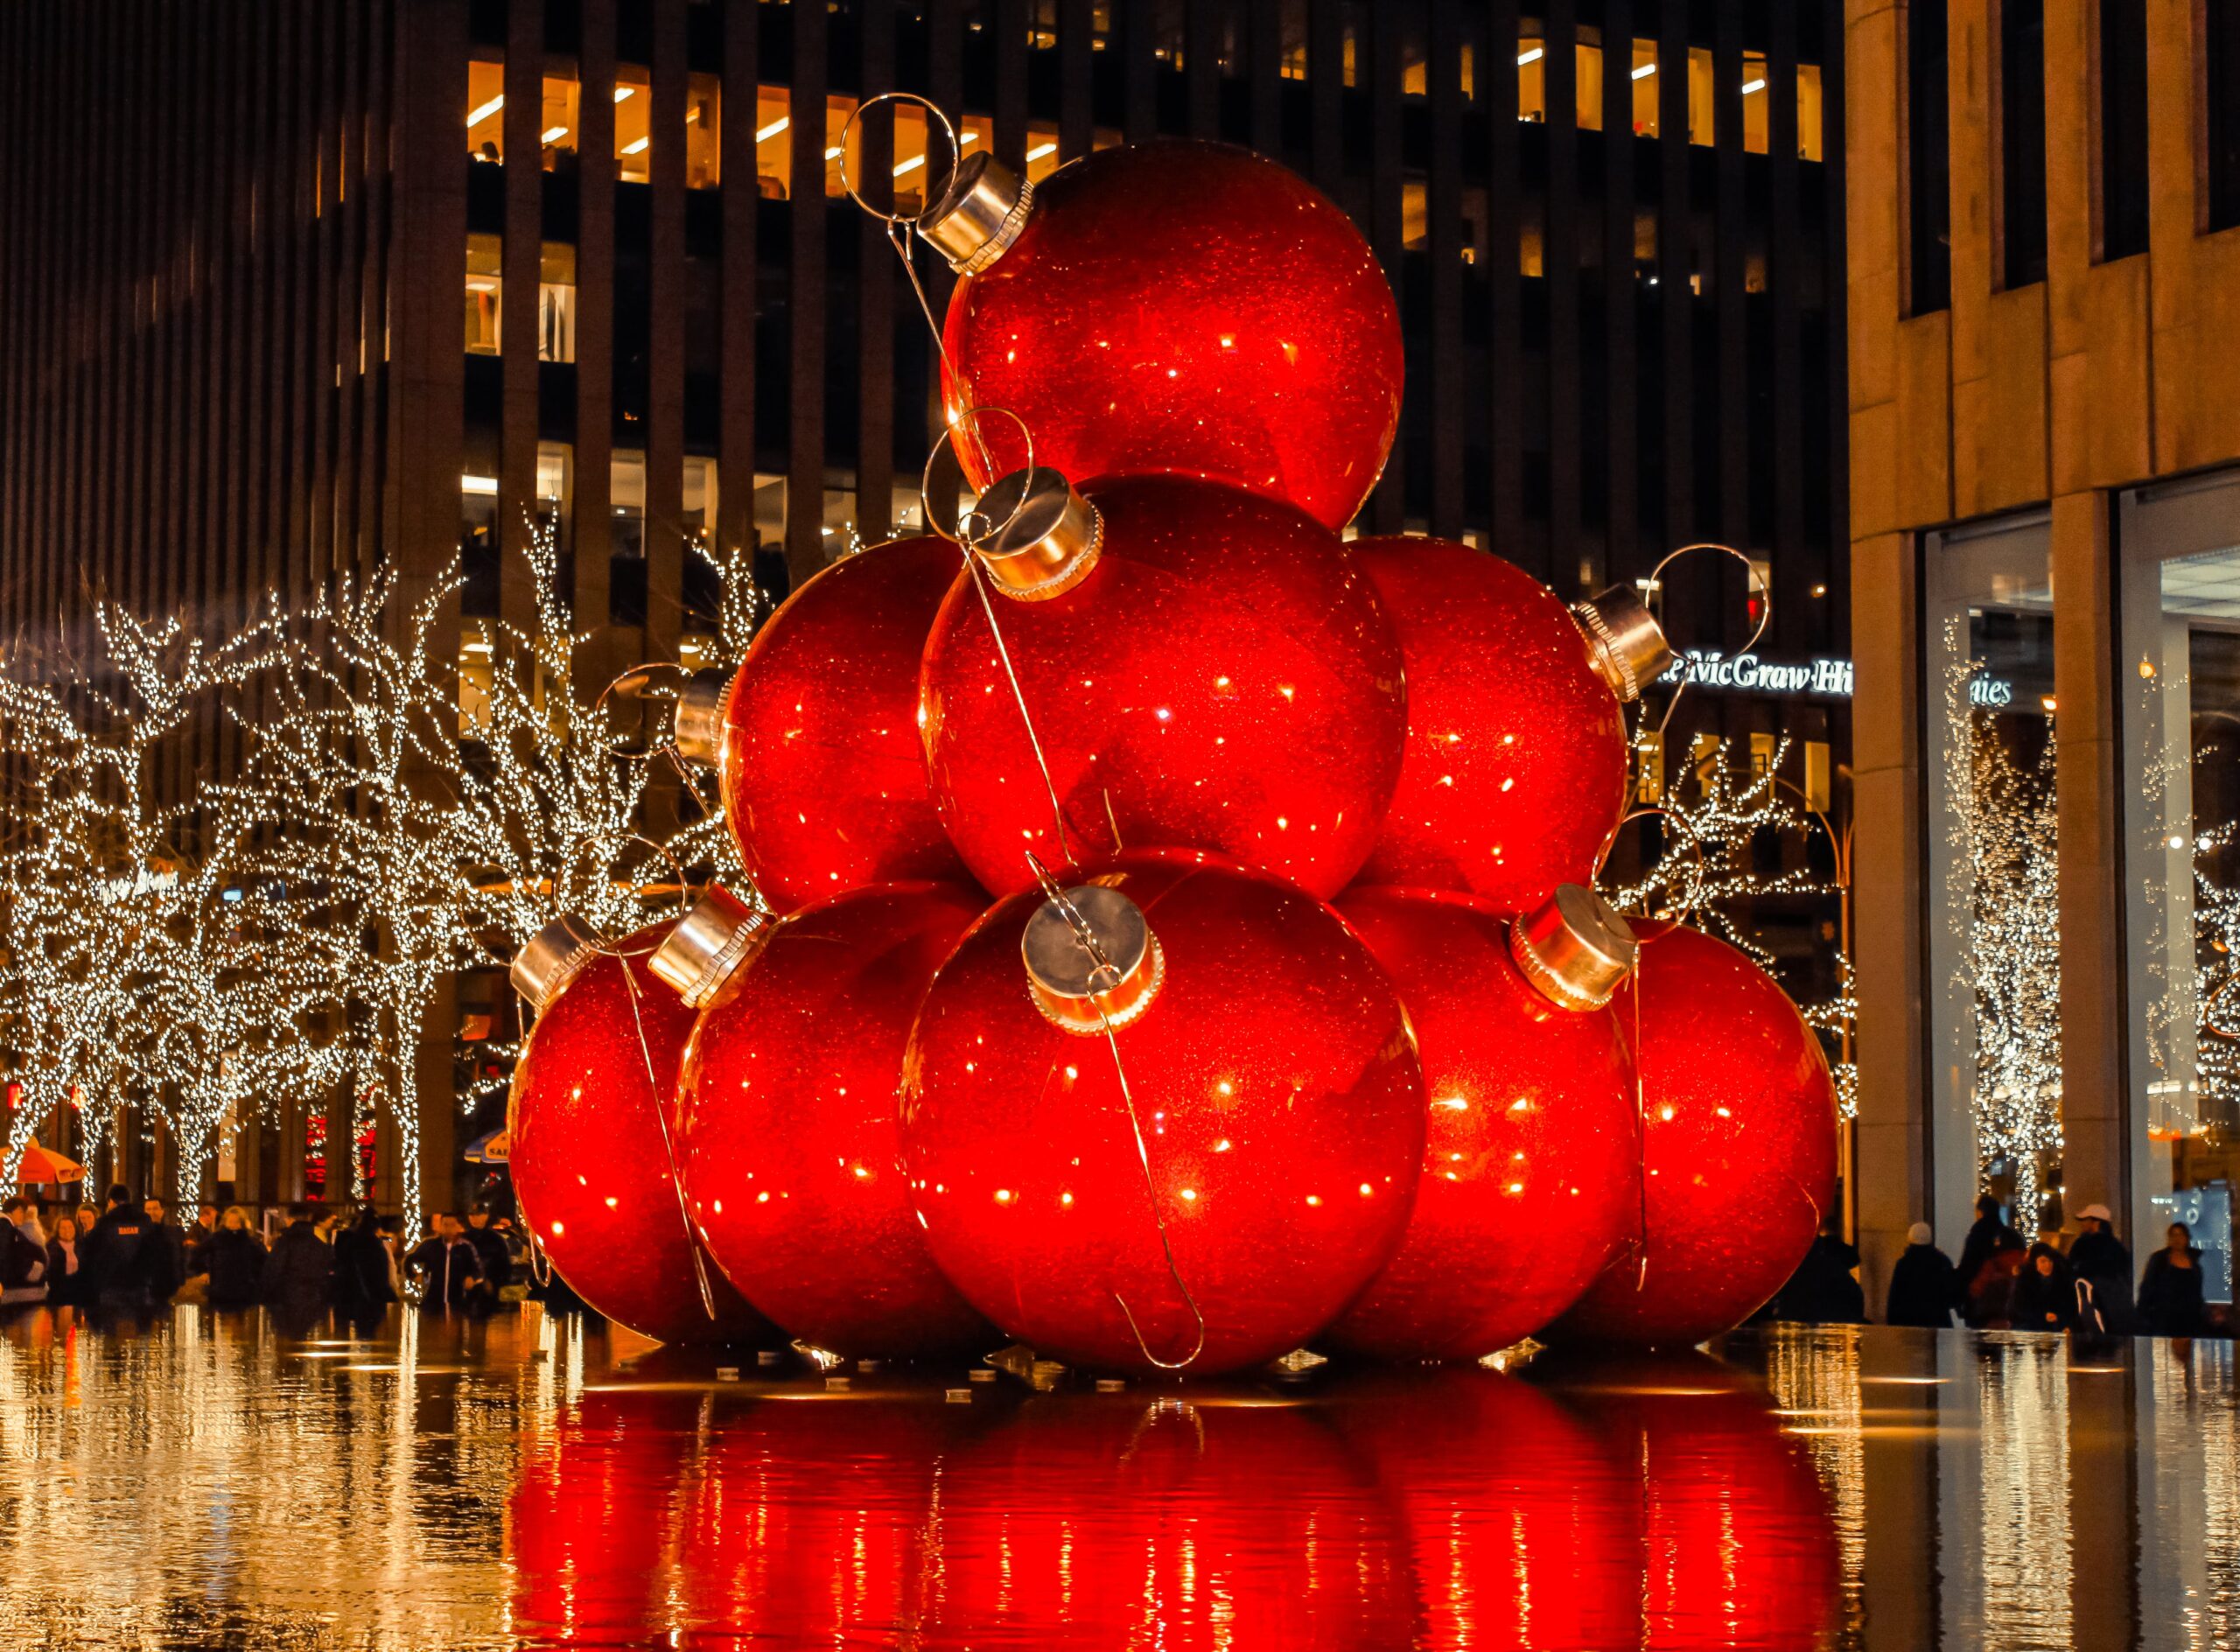 Giant Christmas ball on display